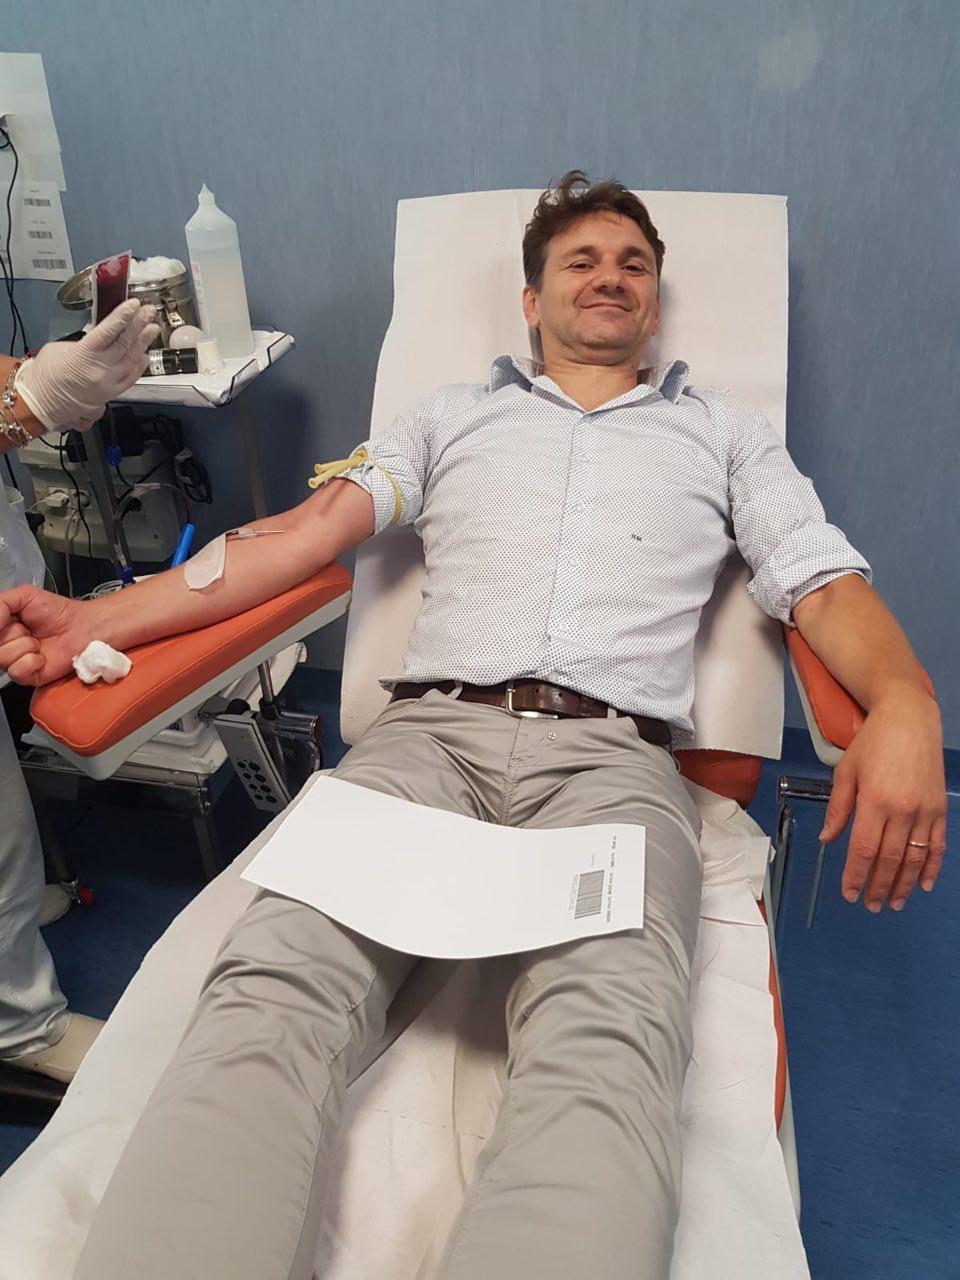 Continua la campagna di sensibilizzazione degli infermieri per la donazione di sangue